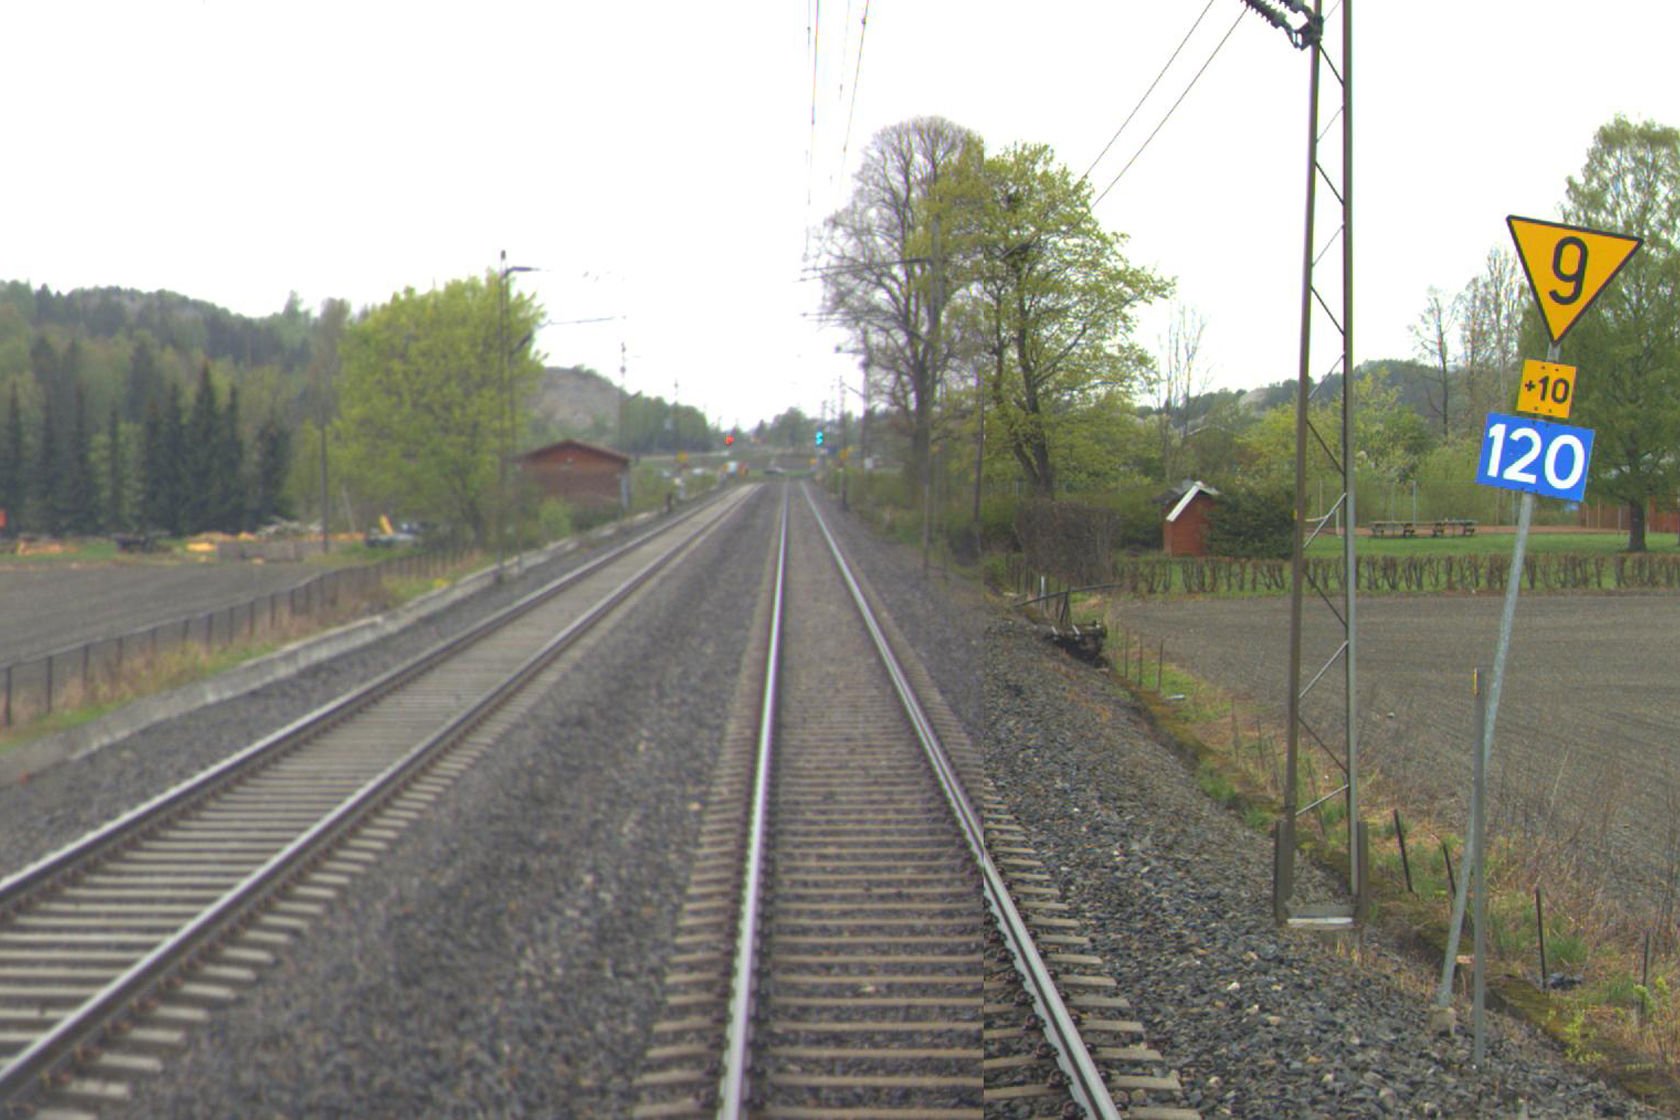 Tracks at Daler station